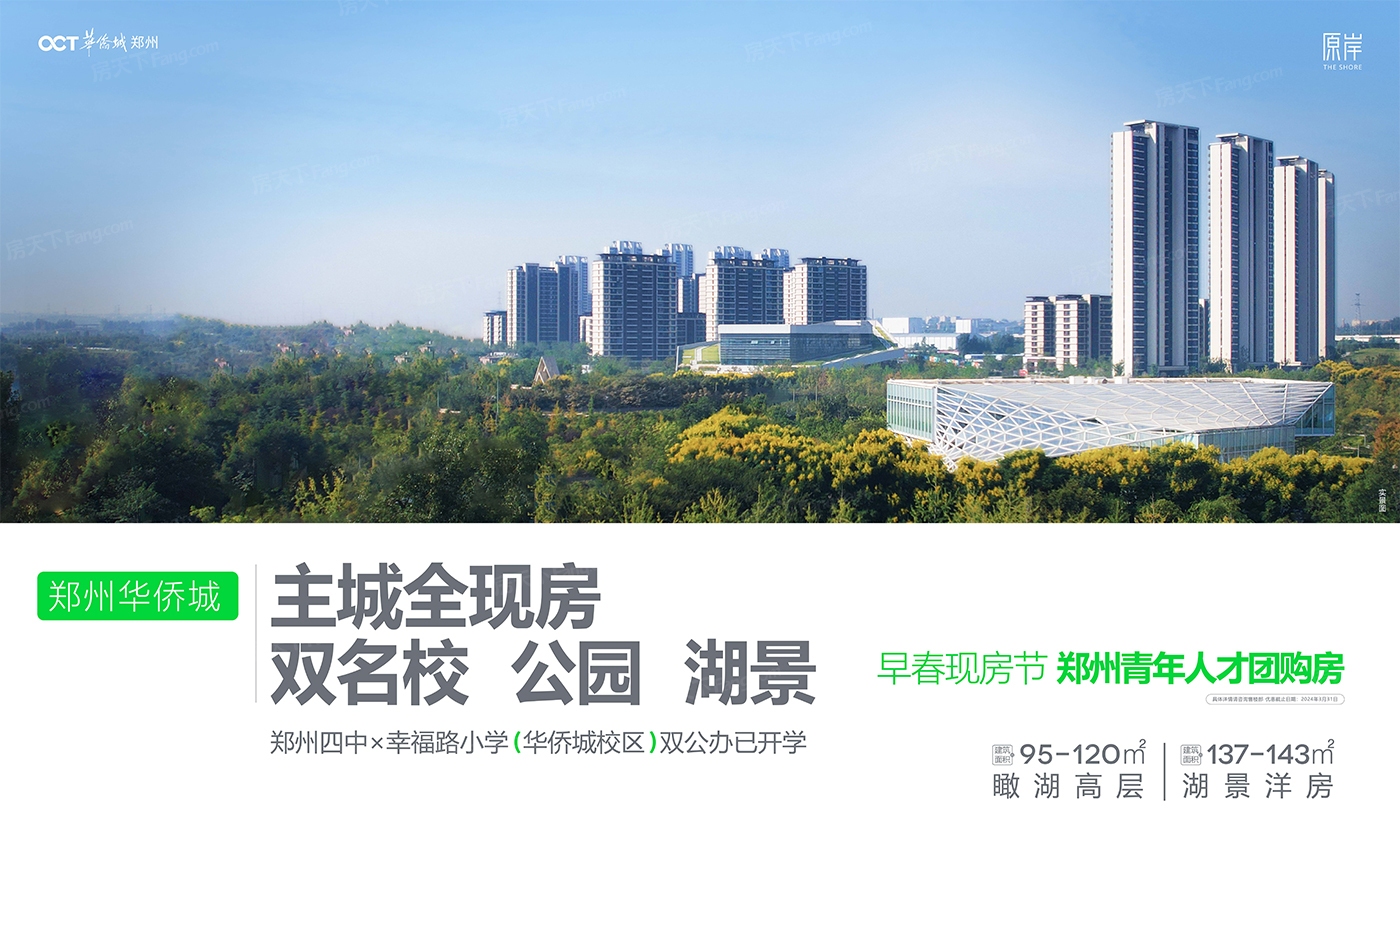 置业顾问亲自带你看郑州 二七区 热门楼盘02月最新动态！